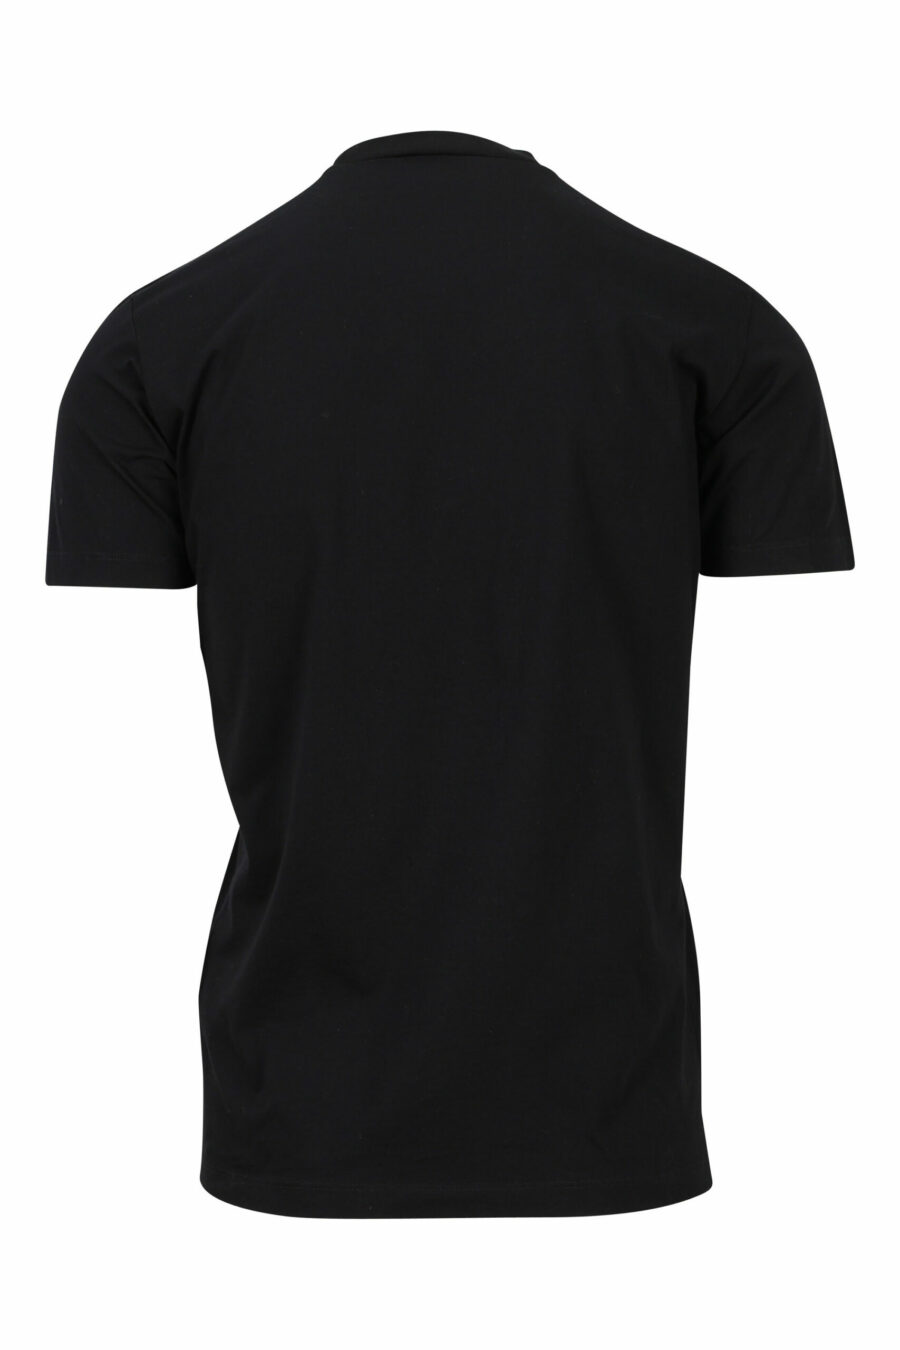 Schwarzes T-Shirt mit geprägtem monochromem Maxilogo - 8052134946459 1 skaliert